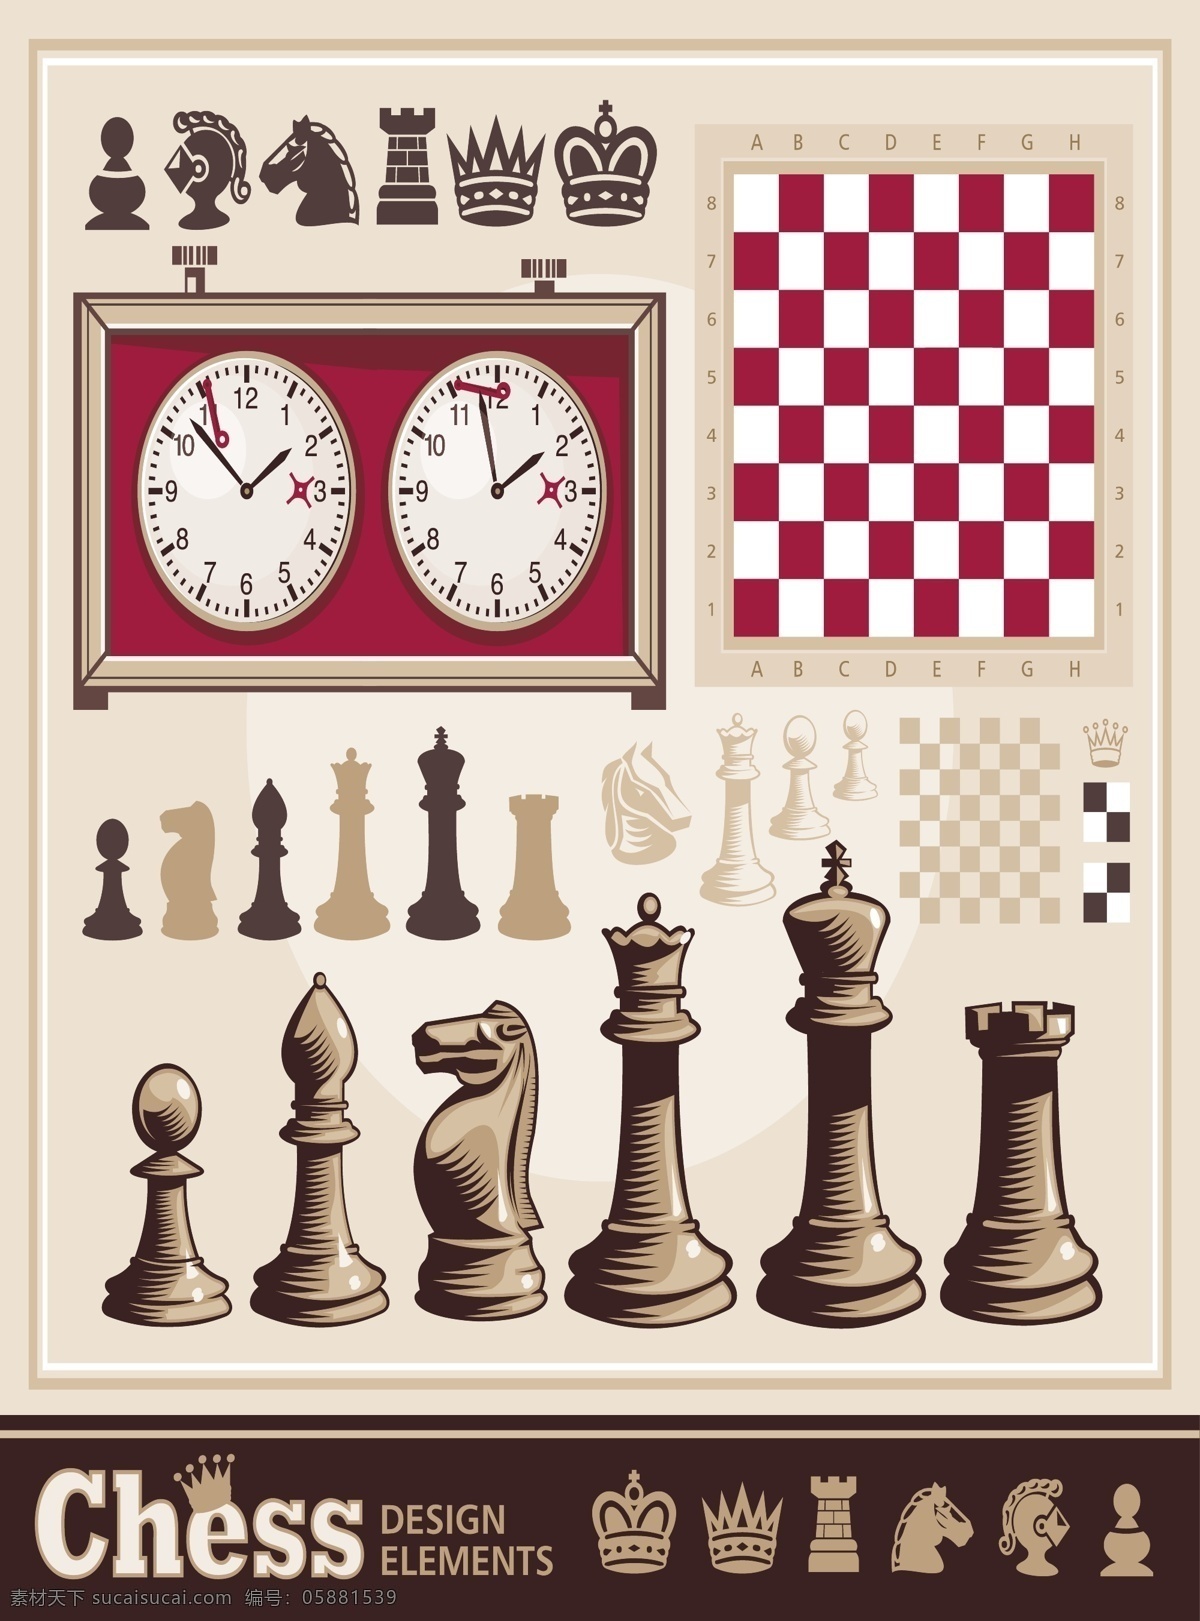 复古 国际象棋 元素 矢量 标签 高清图片 棋盘 图标 比赛计时器 anmin 矢量图 其他矢量图